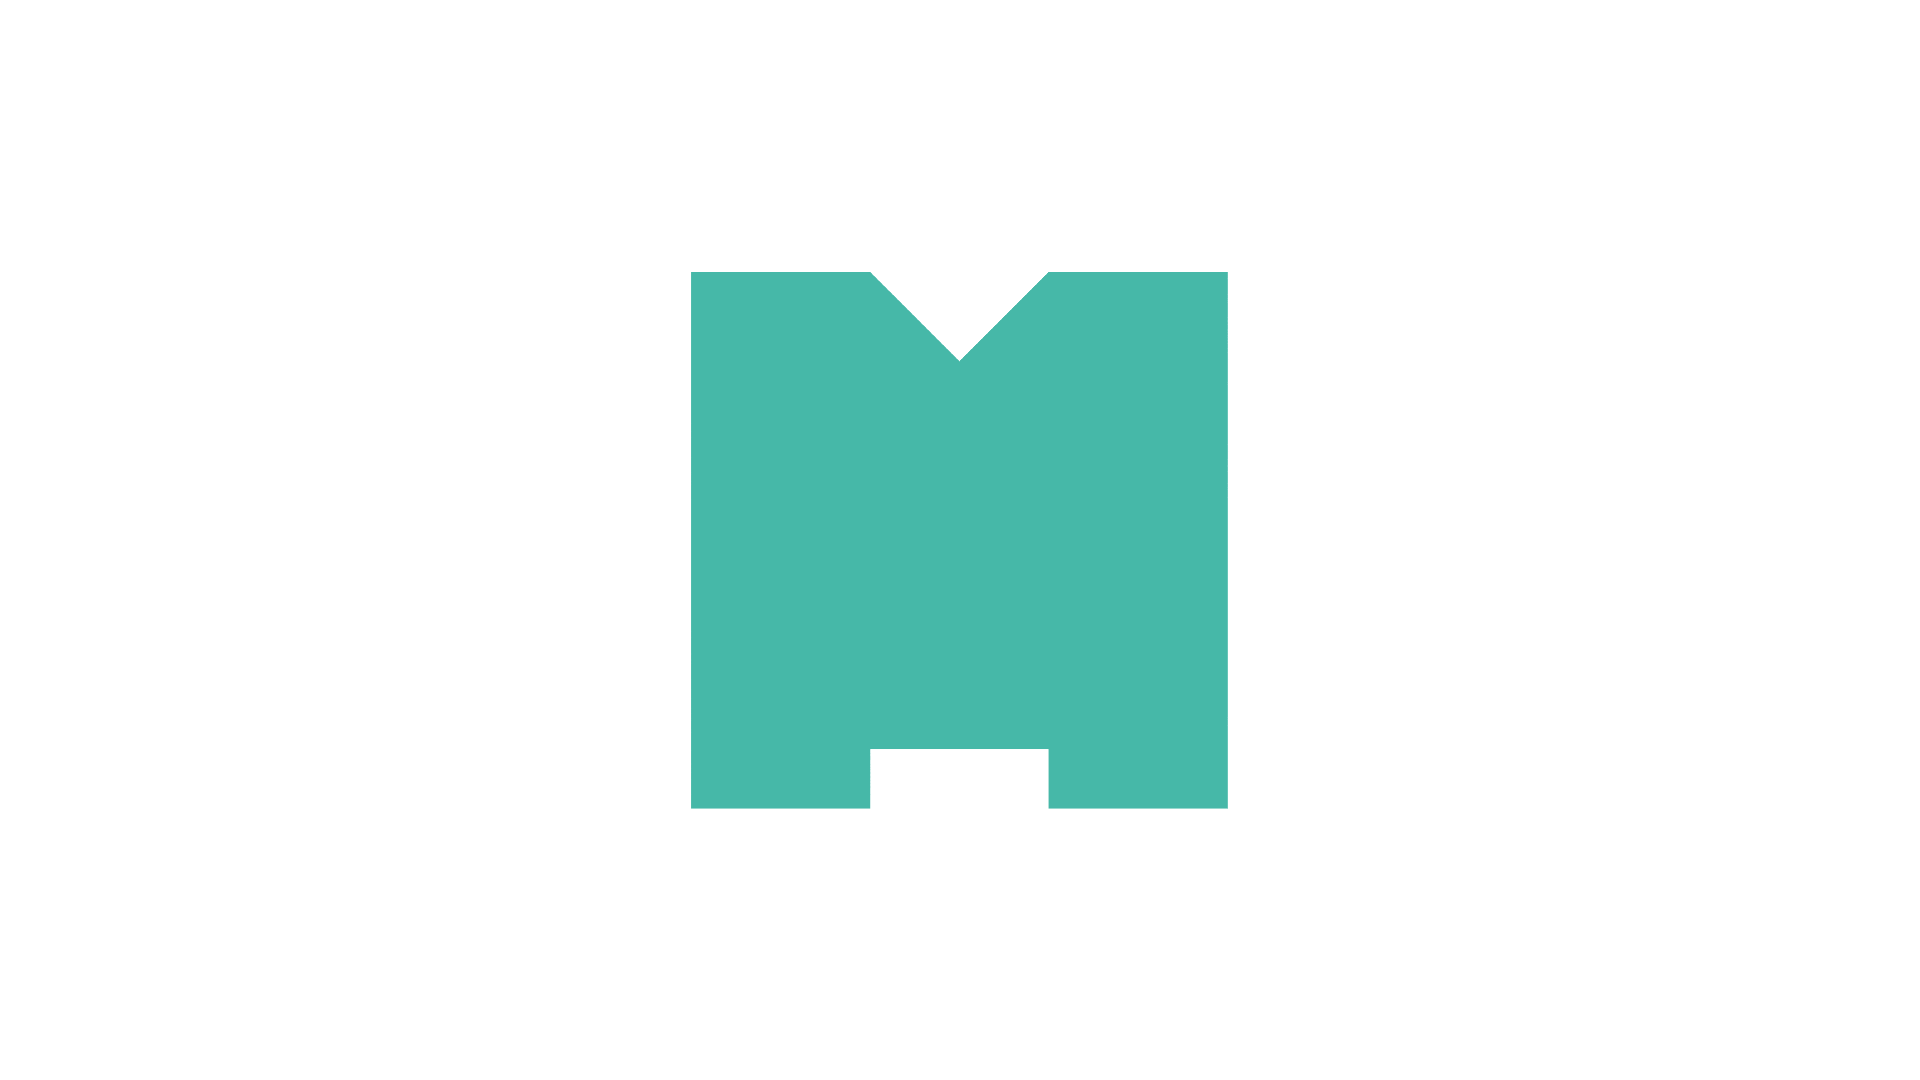 Aninmasjon av M'en i Miljødirektoratets logo, som ved å gjentas blir et grafisk mønster av M'er.